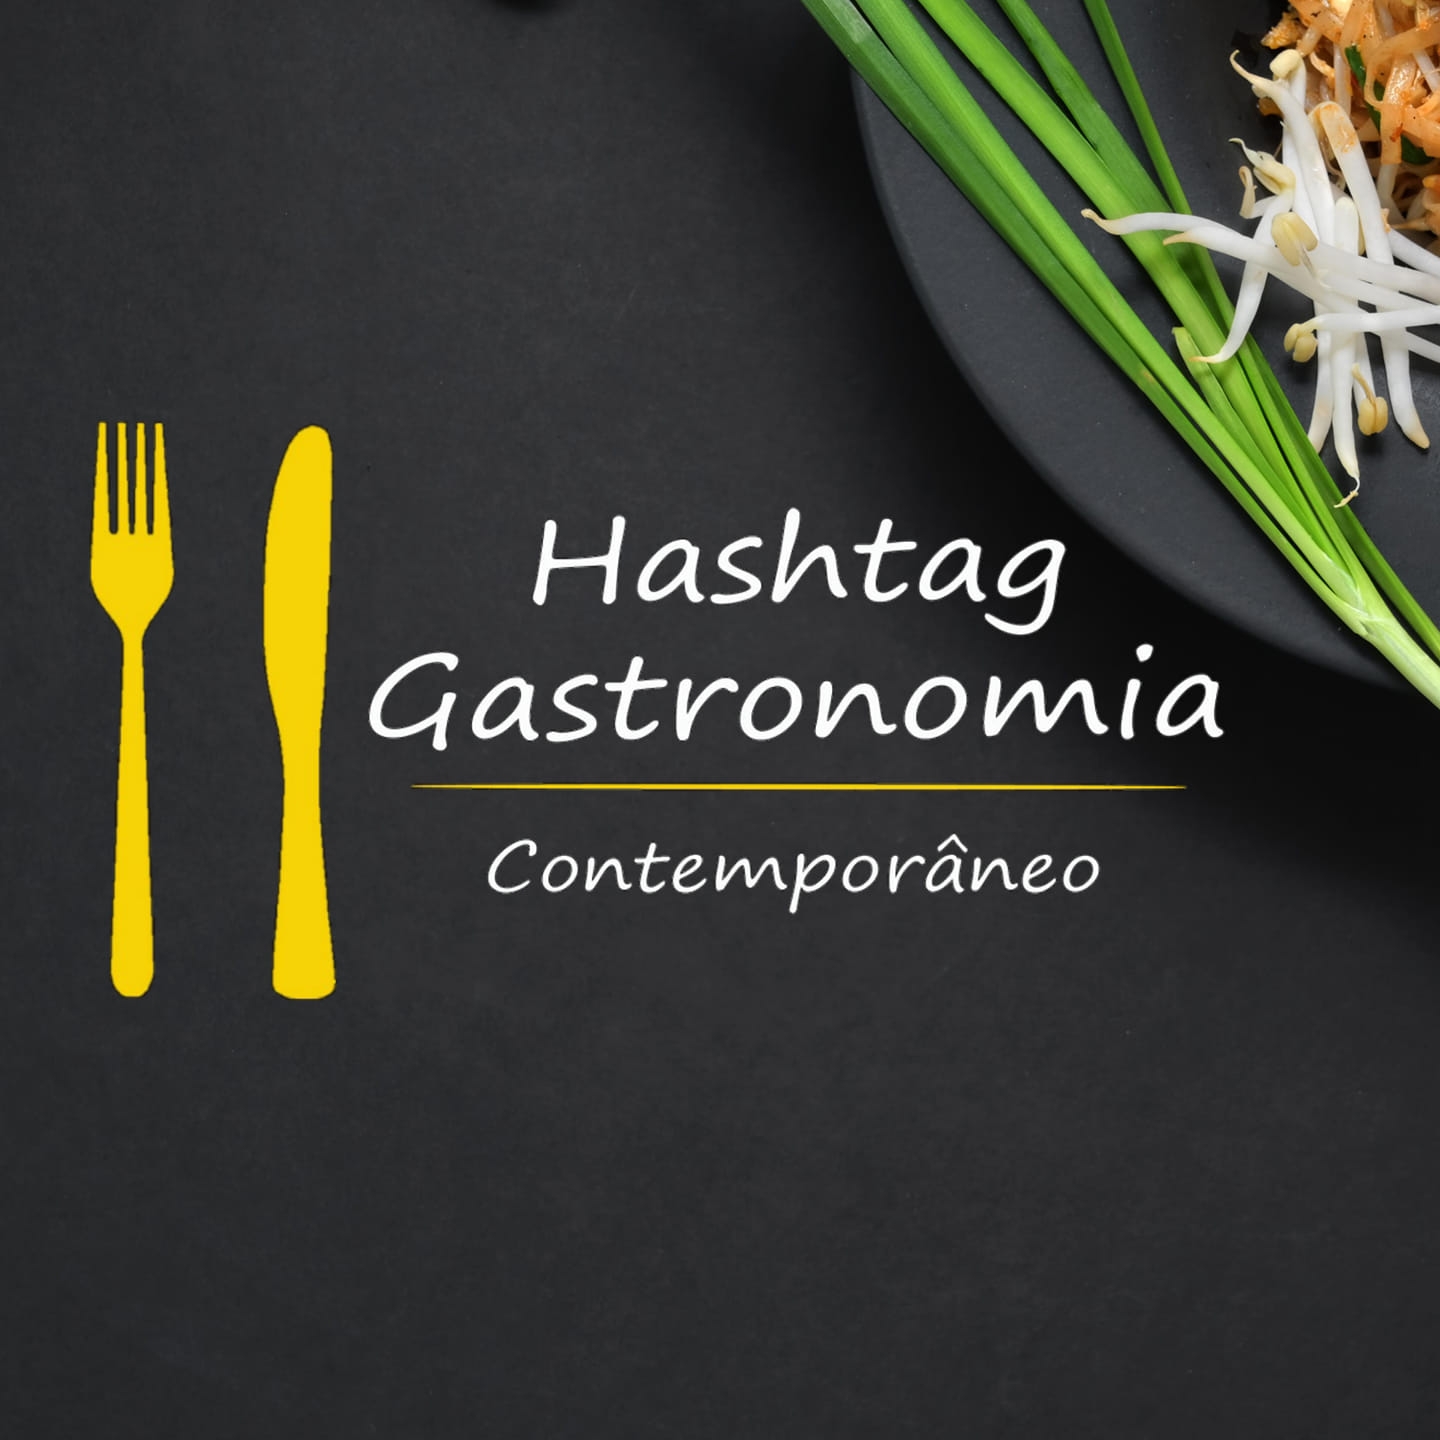 Hashtag Gastronomia